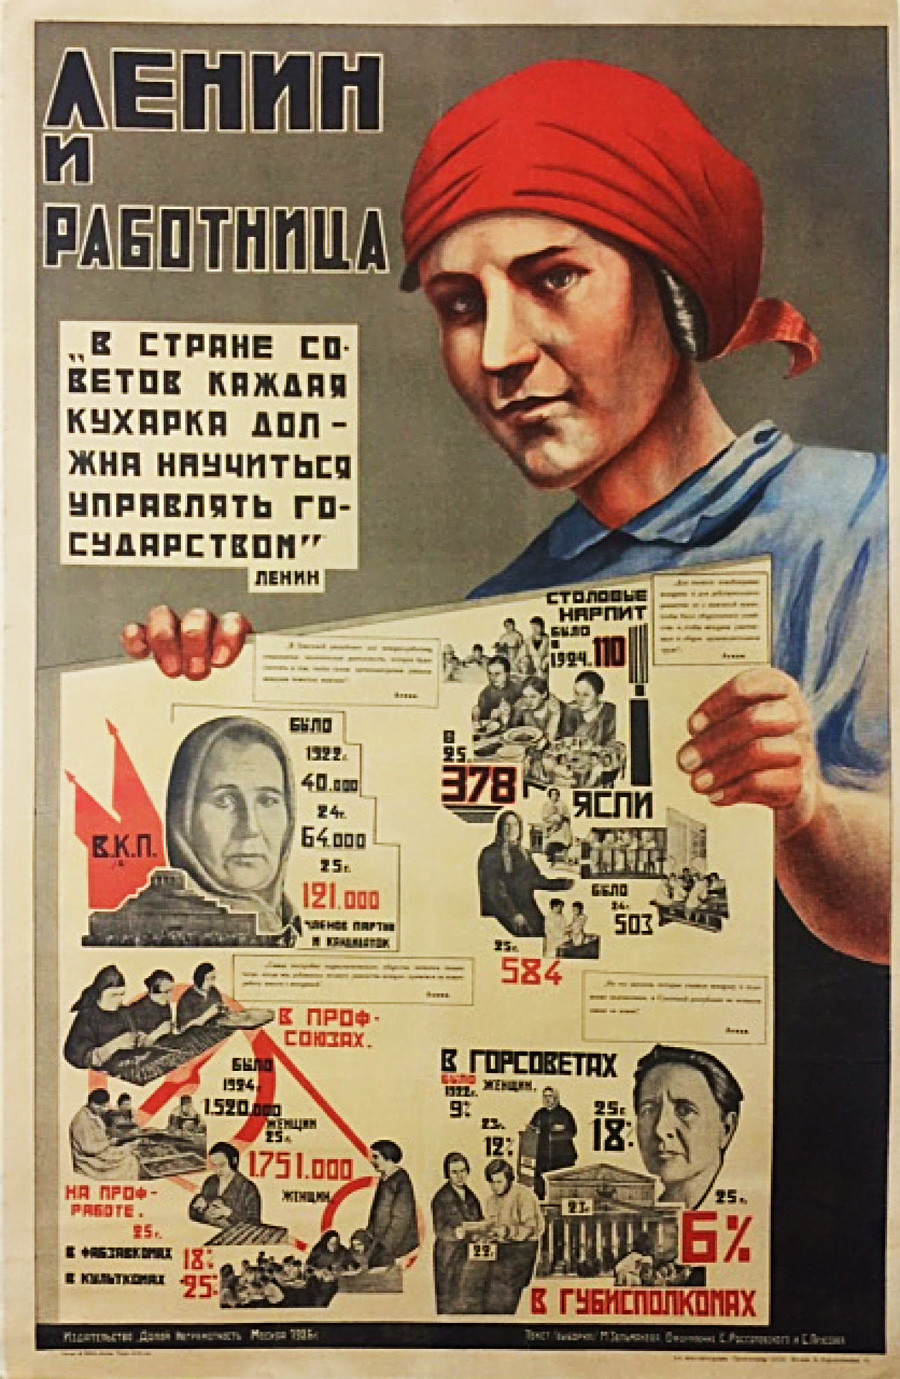 « Au pays des Soviets, chaque cuisinière doit apprendre à gouverner l’État ». Lénine

